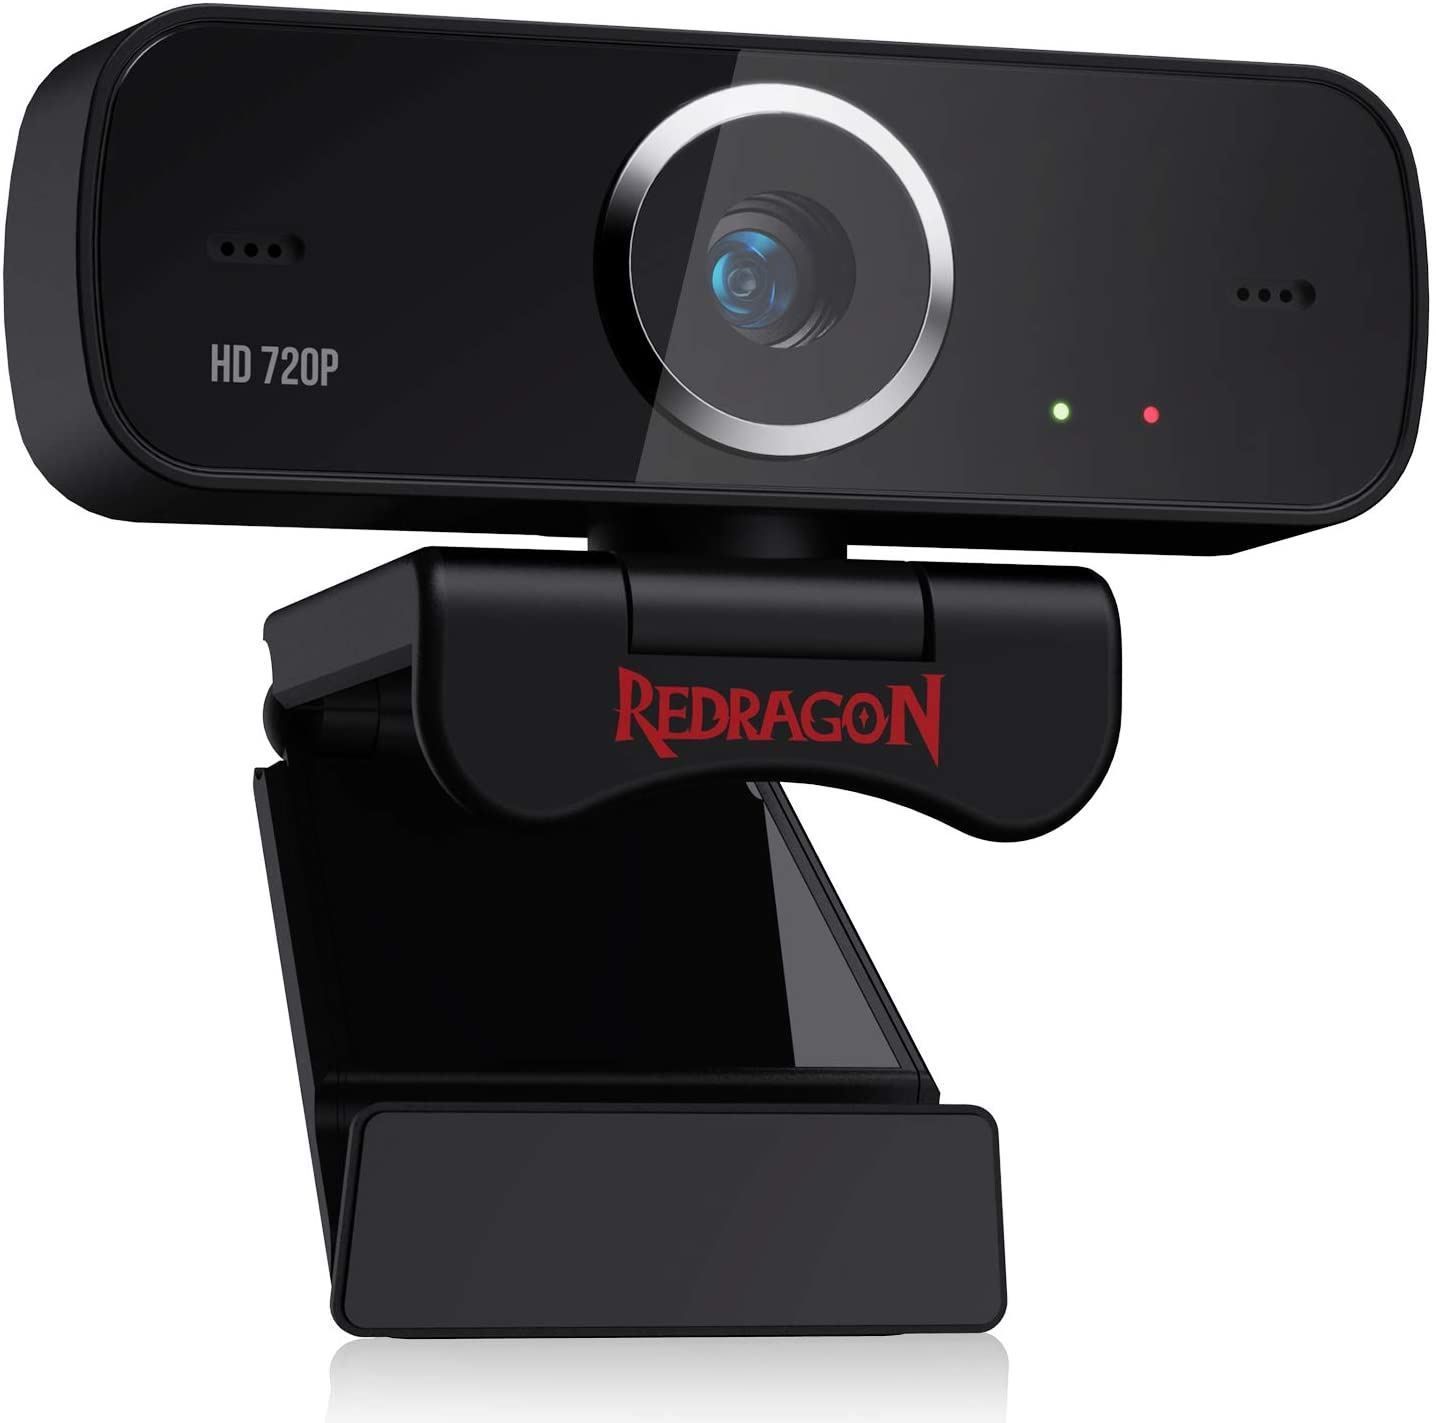 PoliHome Web κάμερα Η/Υ - Redragon Fobos GW600